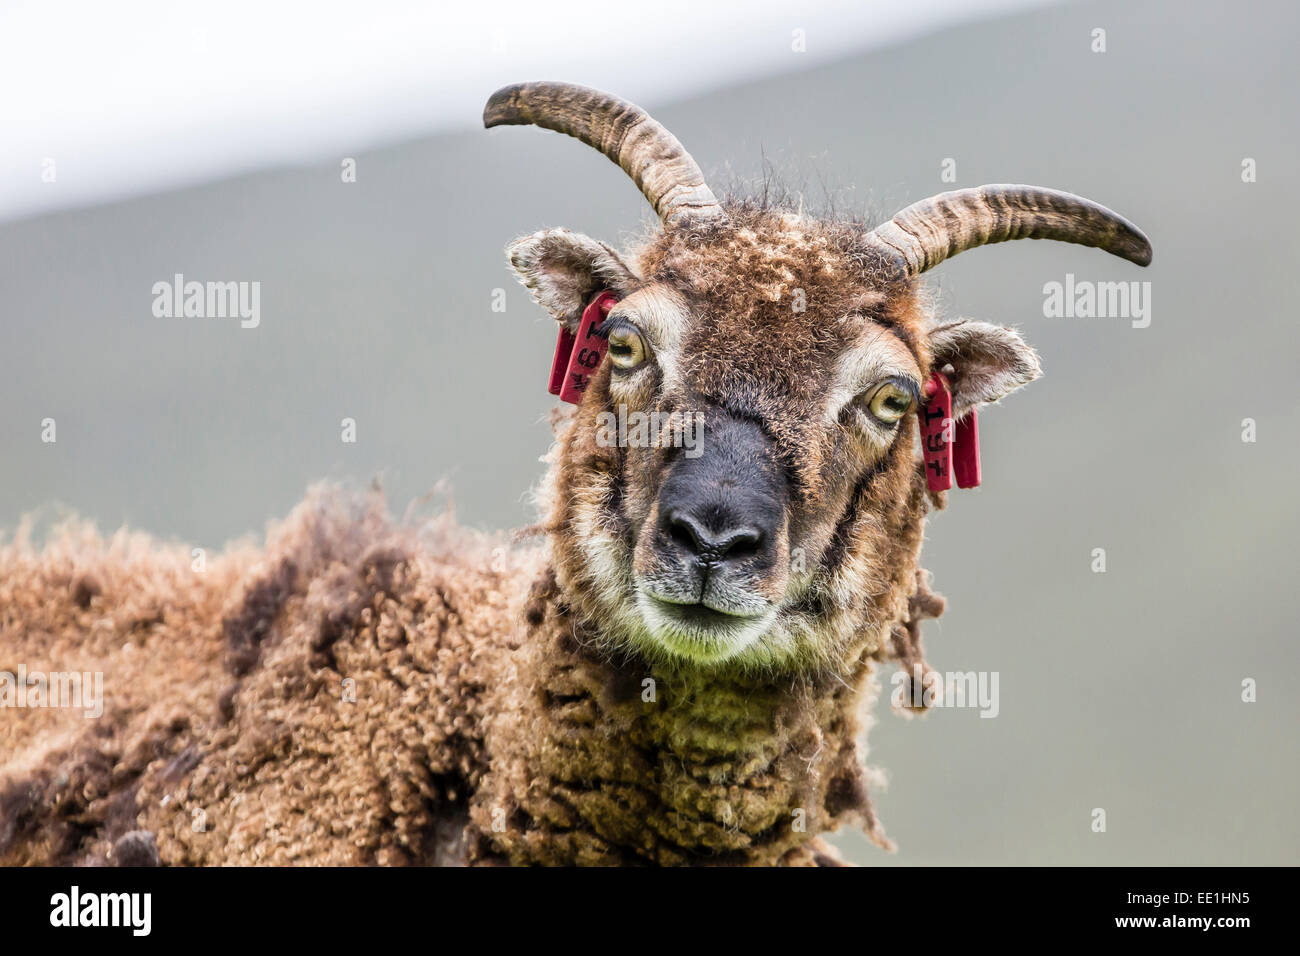 Schafe, genannt die Soay roaming der Steins bleibt des evakuierten Dorfes auf Hirta, St. Kilda Archipelago, Schottland, Vereinigtes Königreich Stockfoto